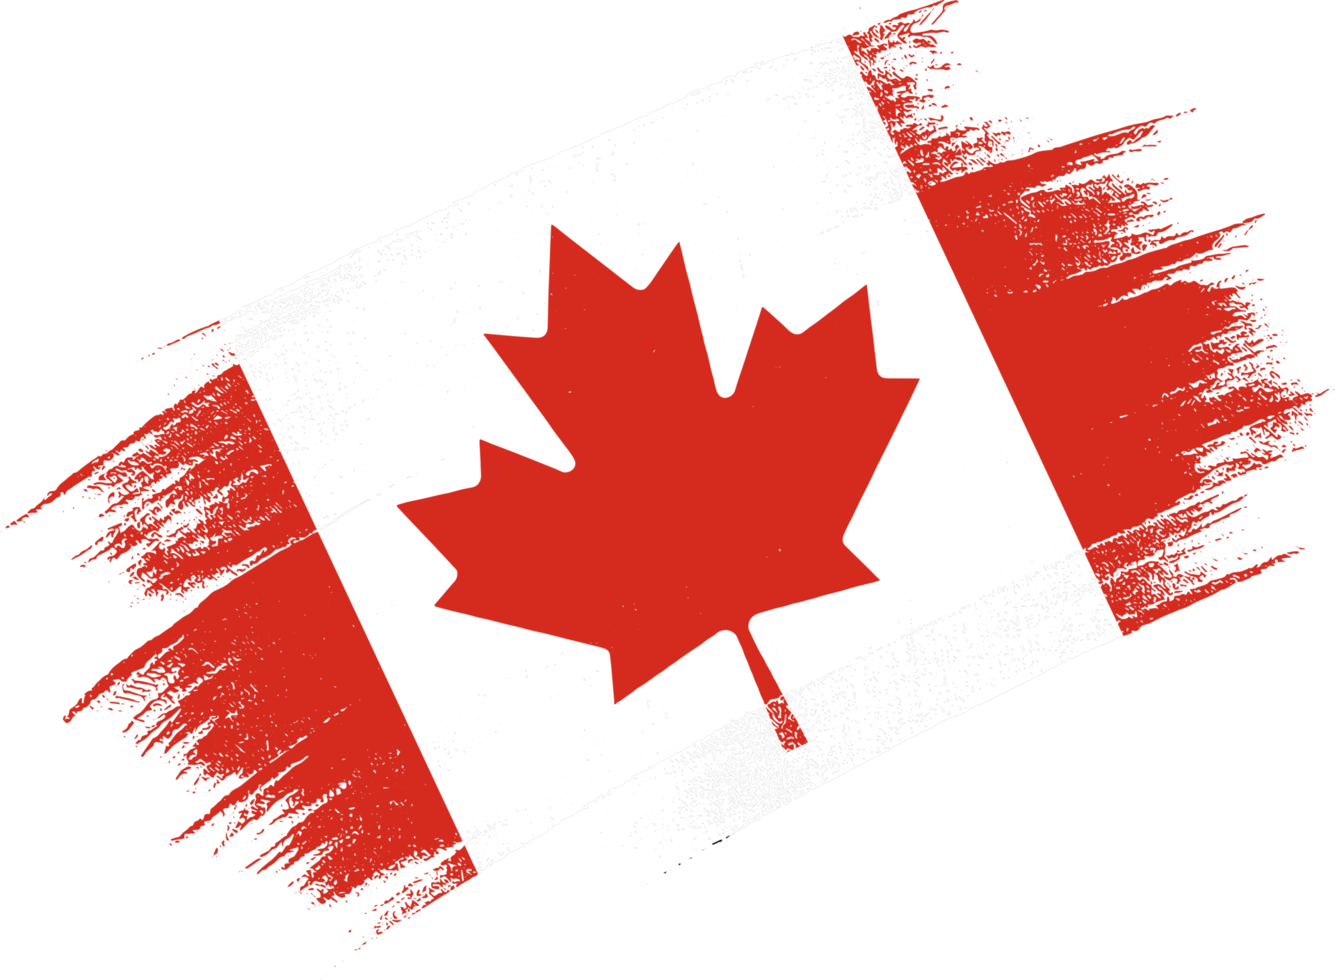 Canada bandiera con spazzola dipingere strutturato isolato su png o trasparente sfondo